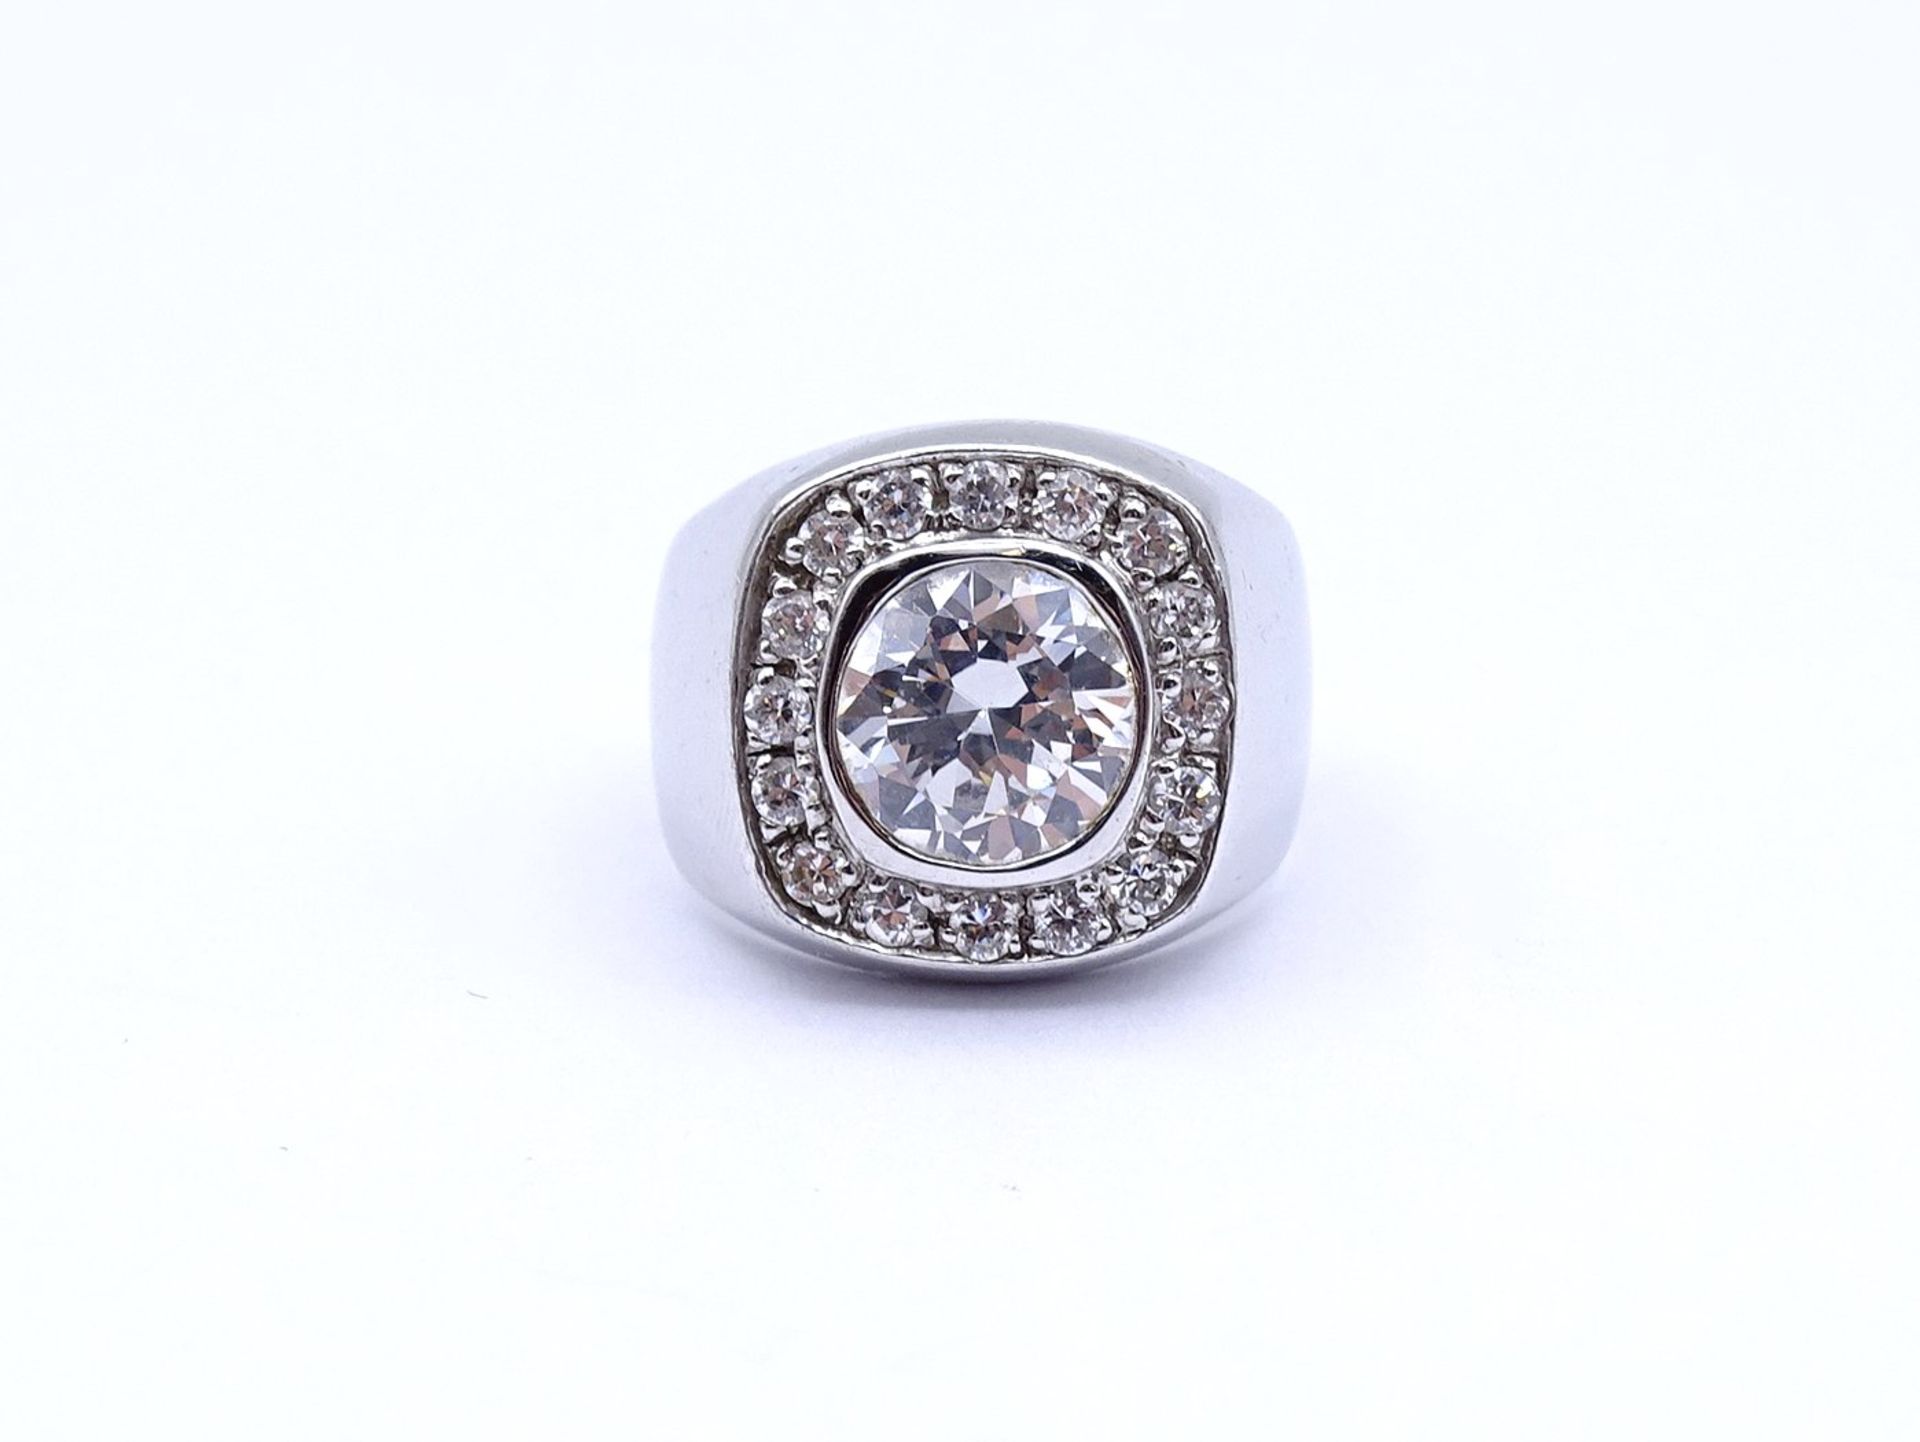 925er Silber Ring mit rund facc. klaren Steinen, 8,3g., RG 57 - Bild 2 aus 4